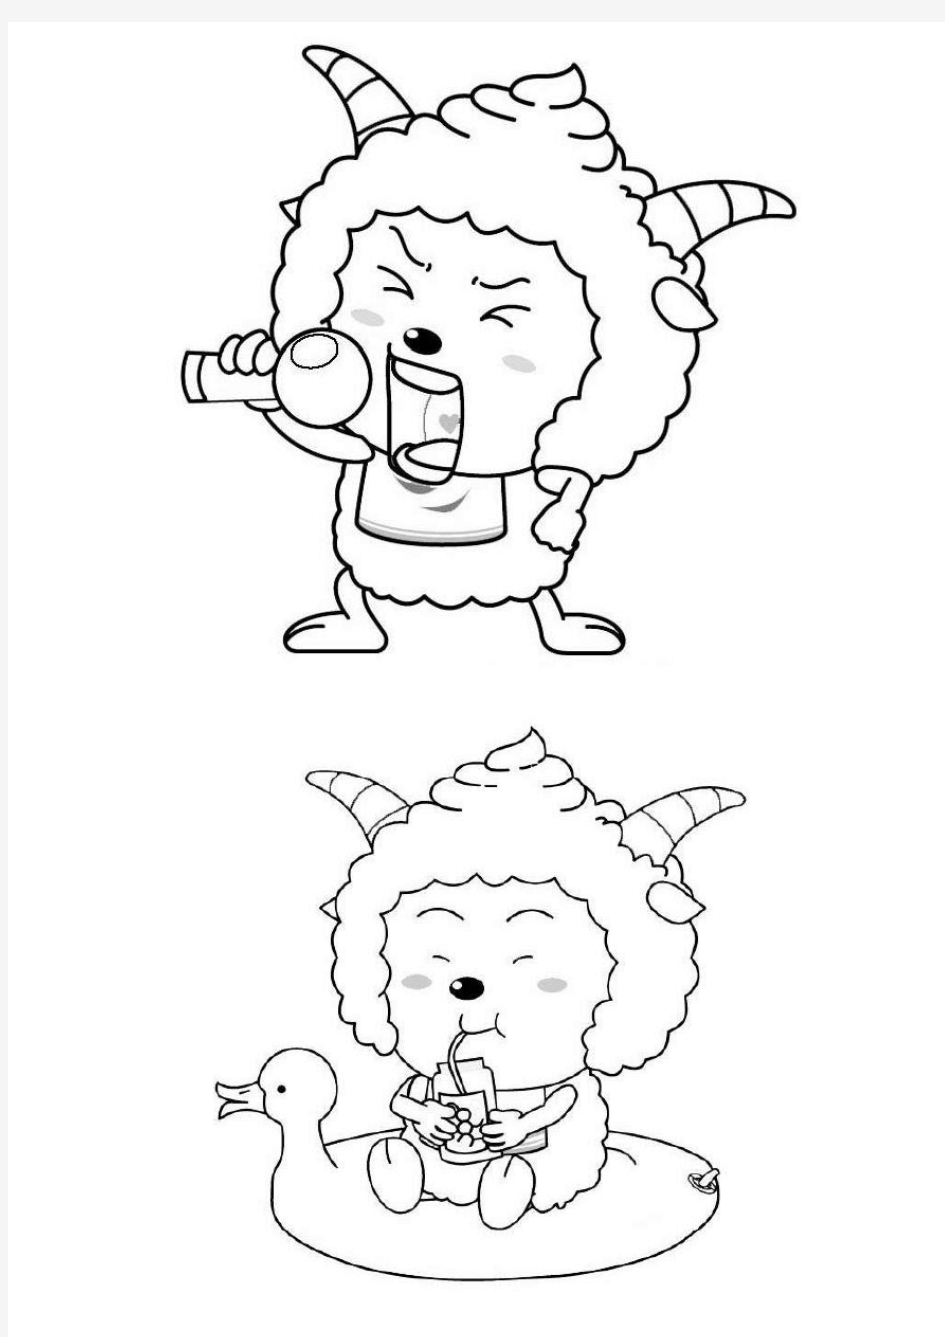 【儿童简笔画】喜羊羊与灰太狼填色画(全)